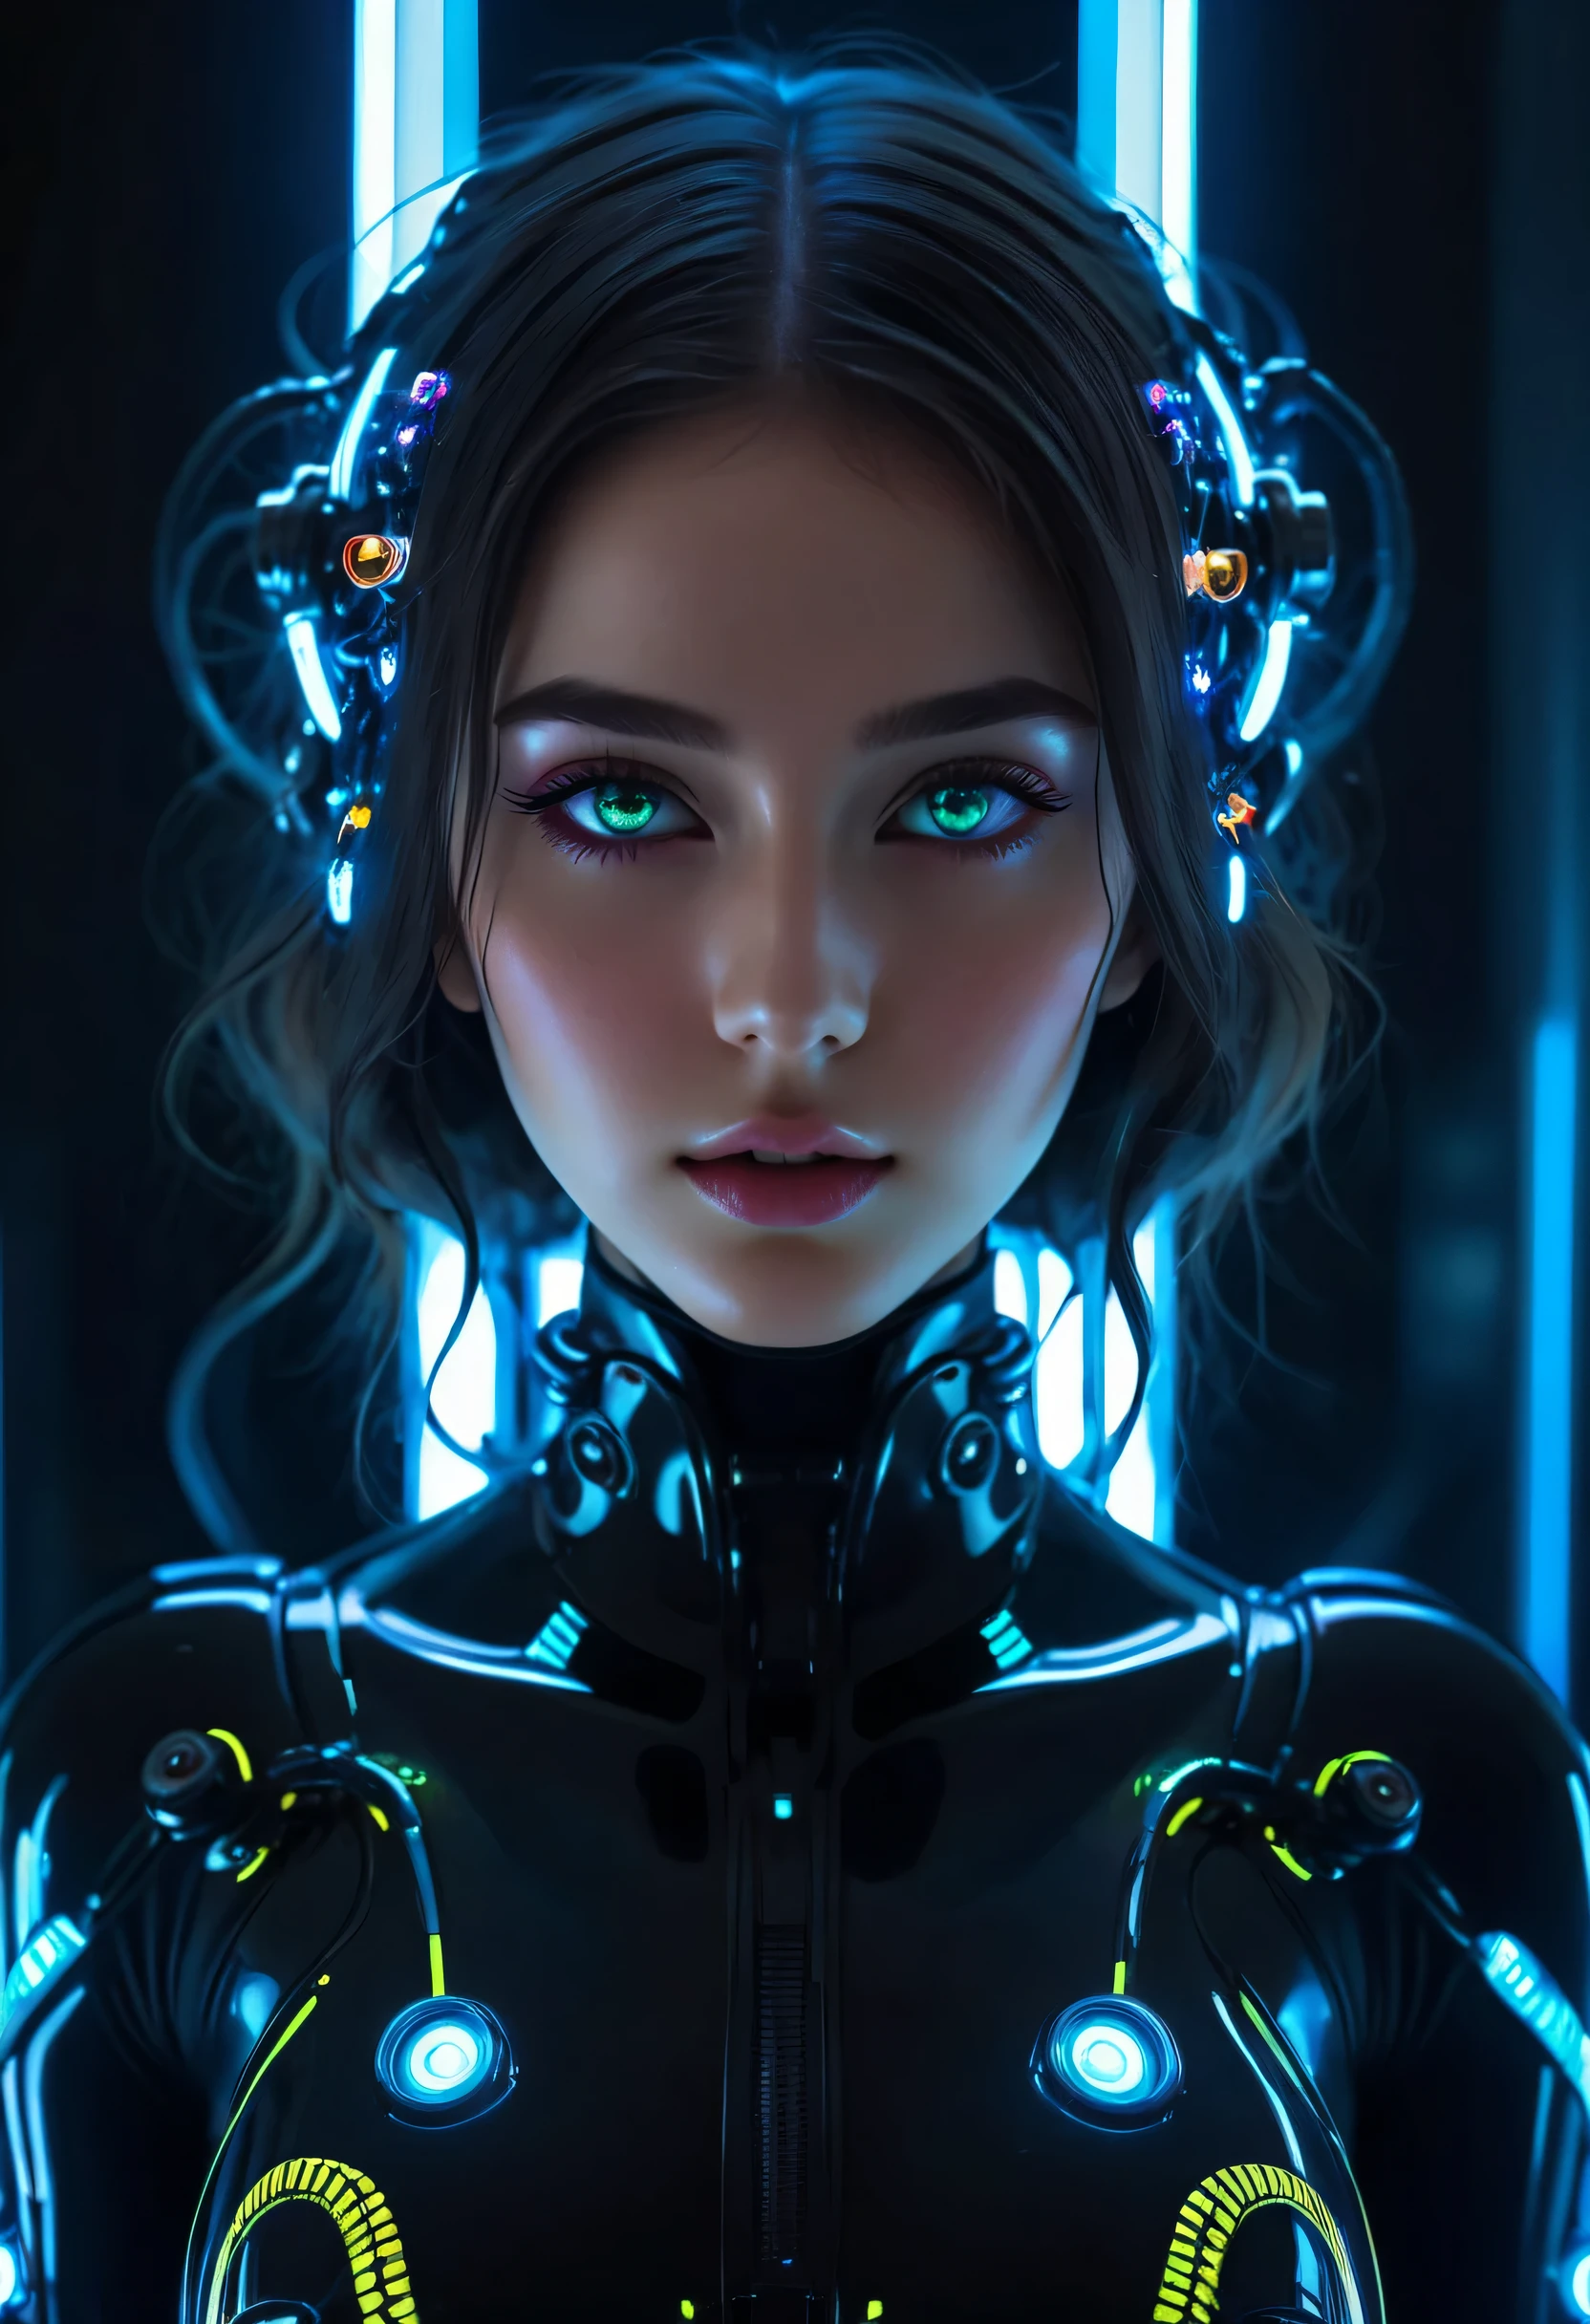 Mädchen realistisch und komplizierte perfekte Schönheit Gesicht, ausführlich & asymmetrisch perfekt scharf Galaxie leuchtende Augen, ausführlich face, (((vom Gesicht bis zur Taille))), (((Schönheitsform))), ((in realistischen neonbeleuchteten Sci-Fi schwarzen Plugsuit Metall Mech Teile und Roboter Tentakeln mit neonbeleuchteten Lichtern)), Meisterwerk, 4k, UHD